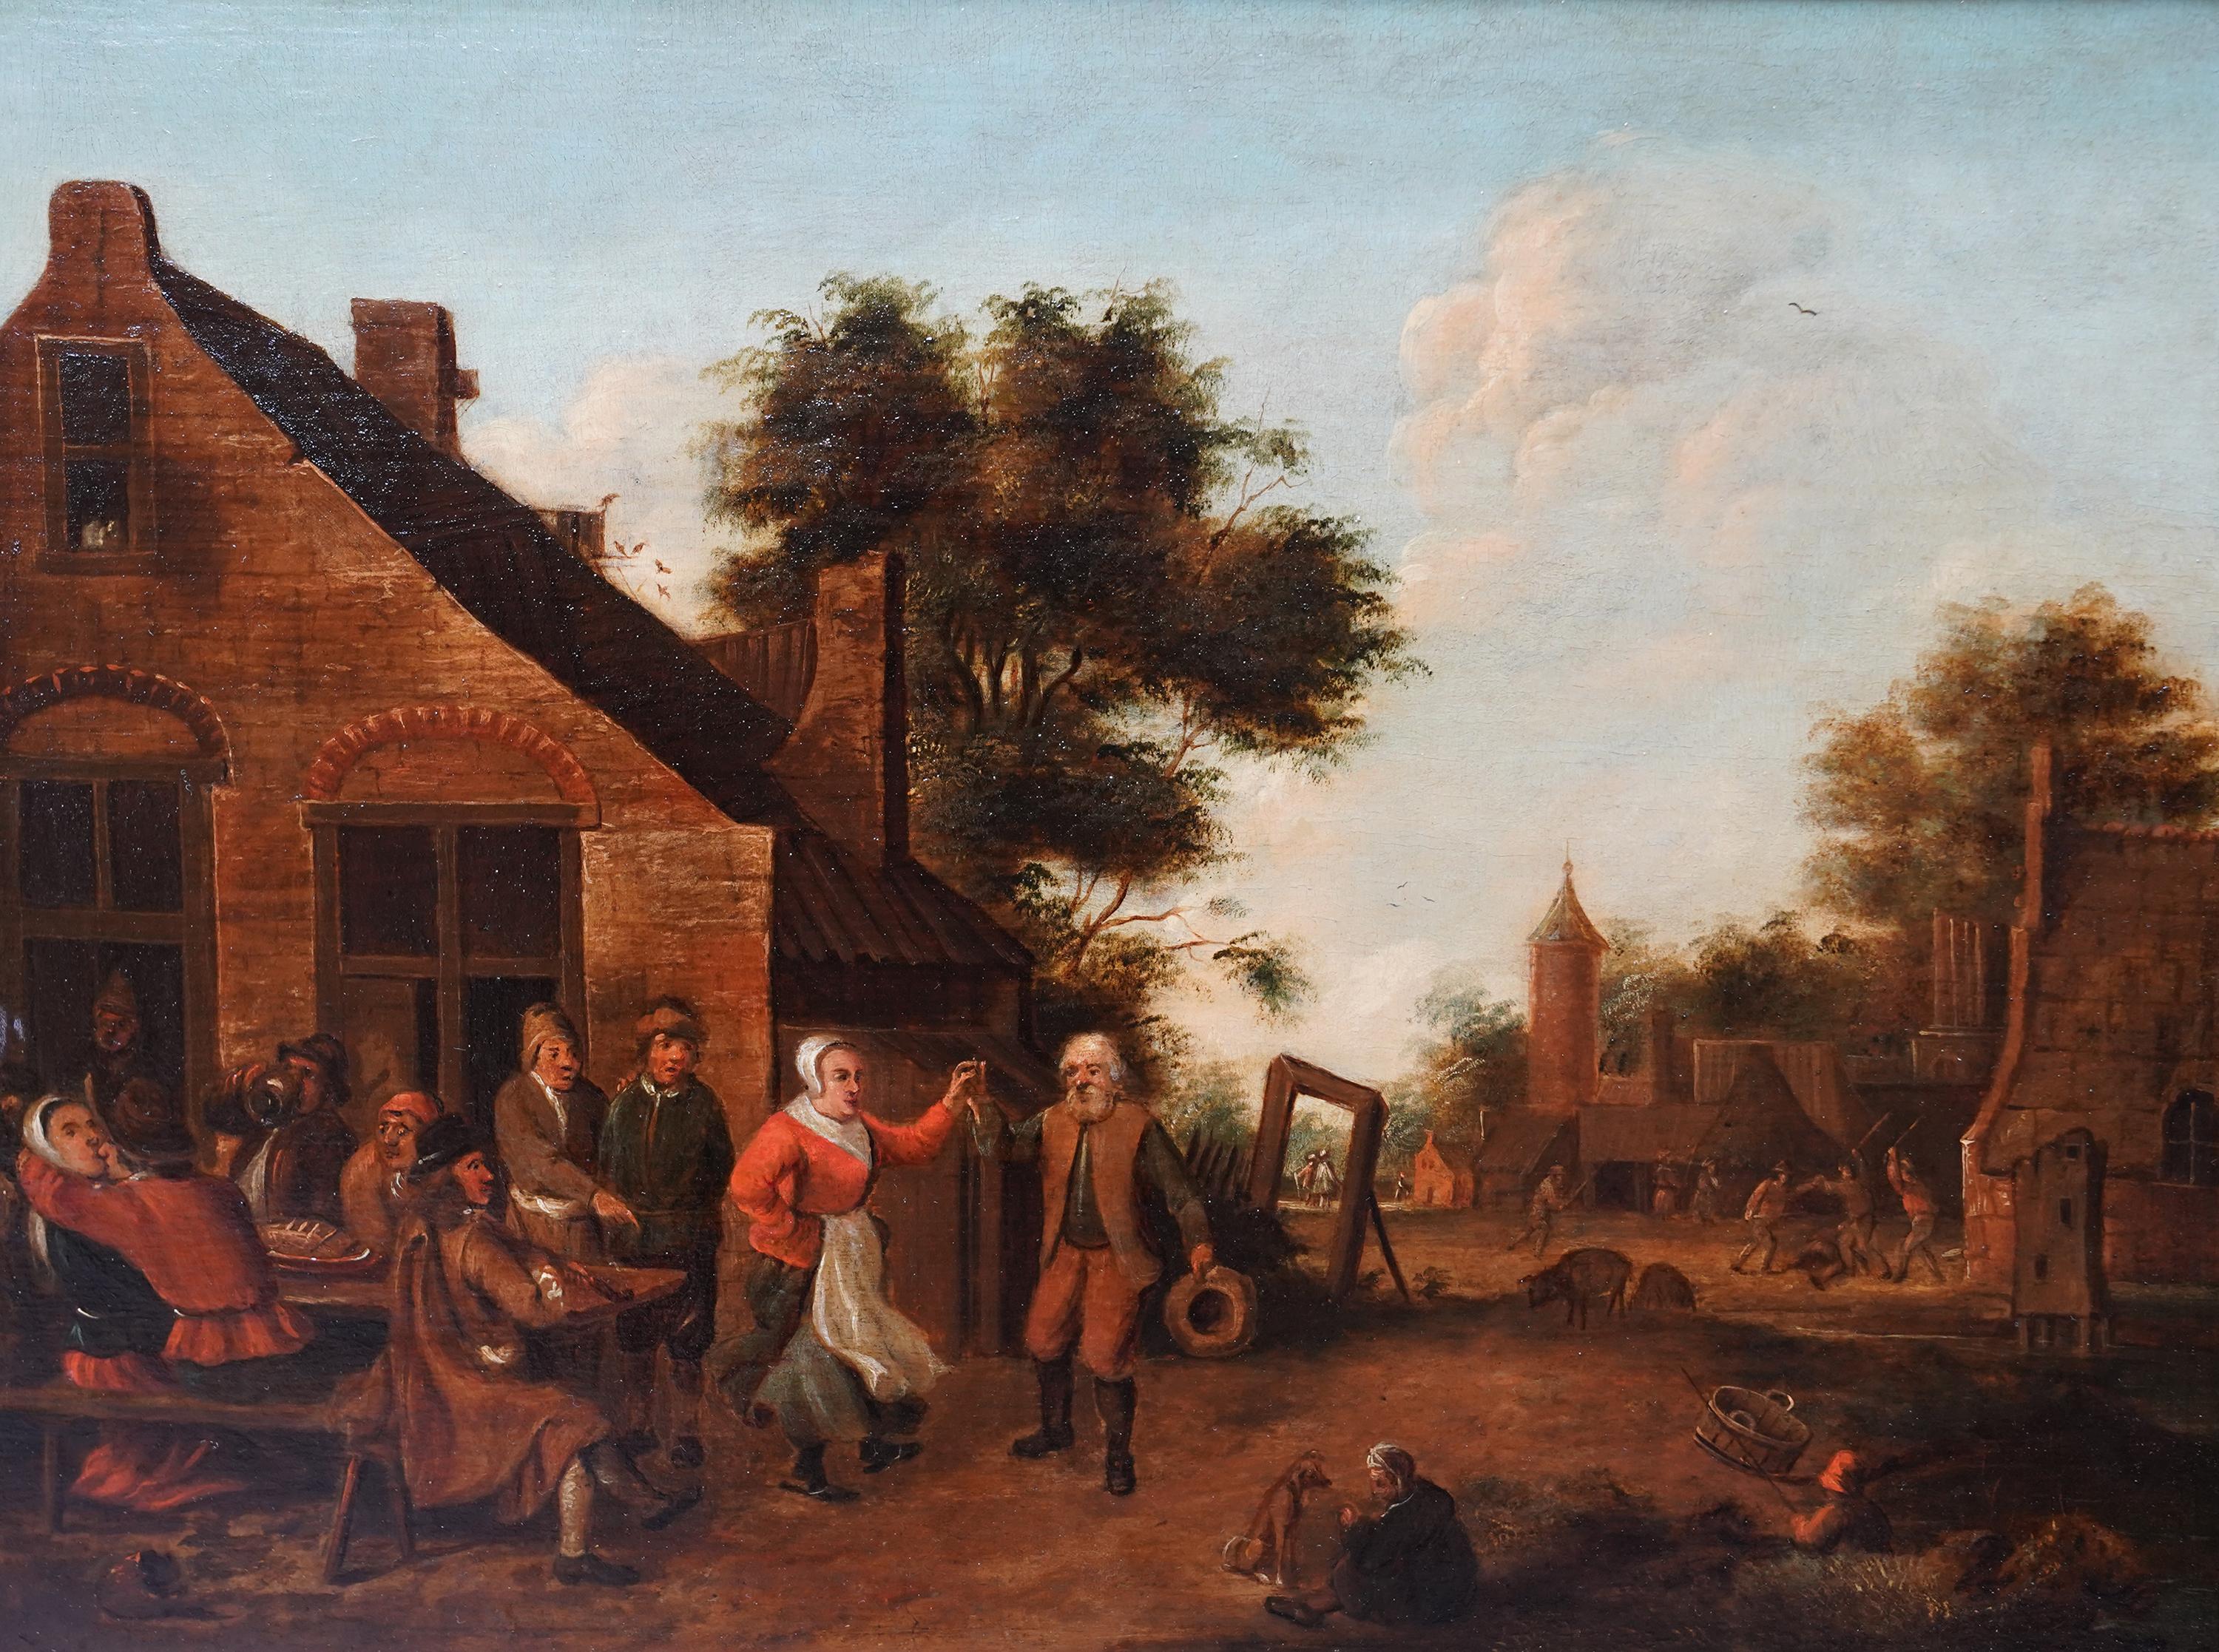 Villagers in a Landscape - Flemish 17thC art figurative landscape oil painting For Sale 7